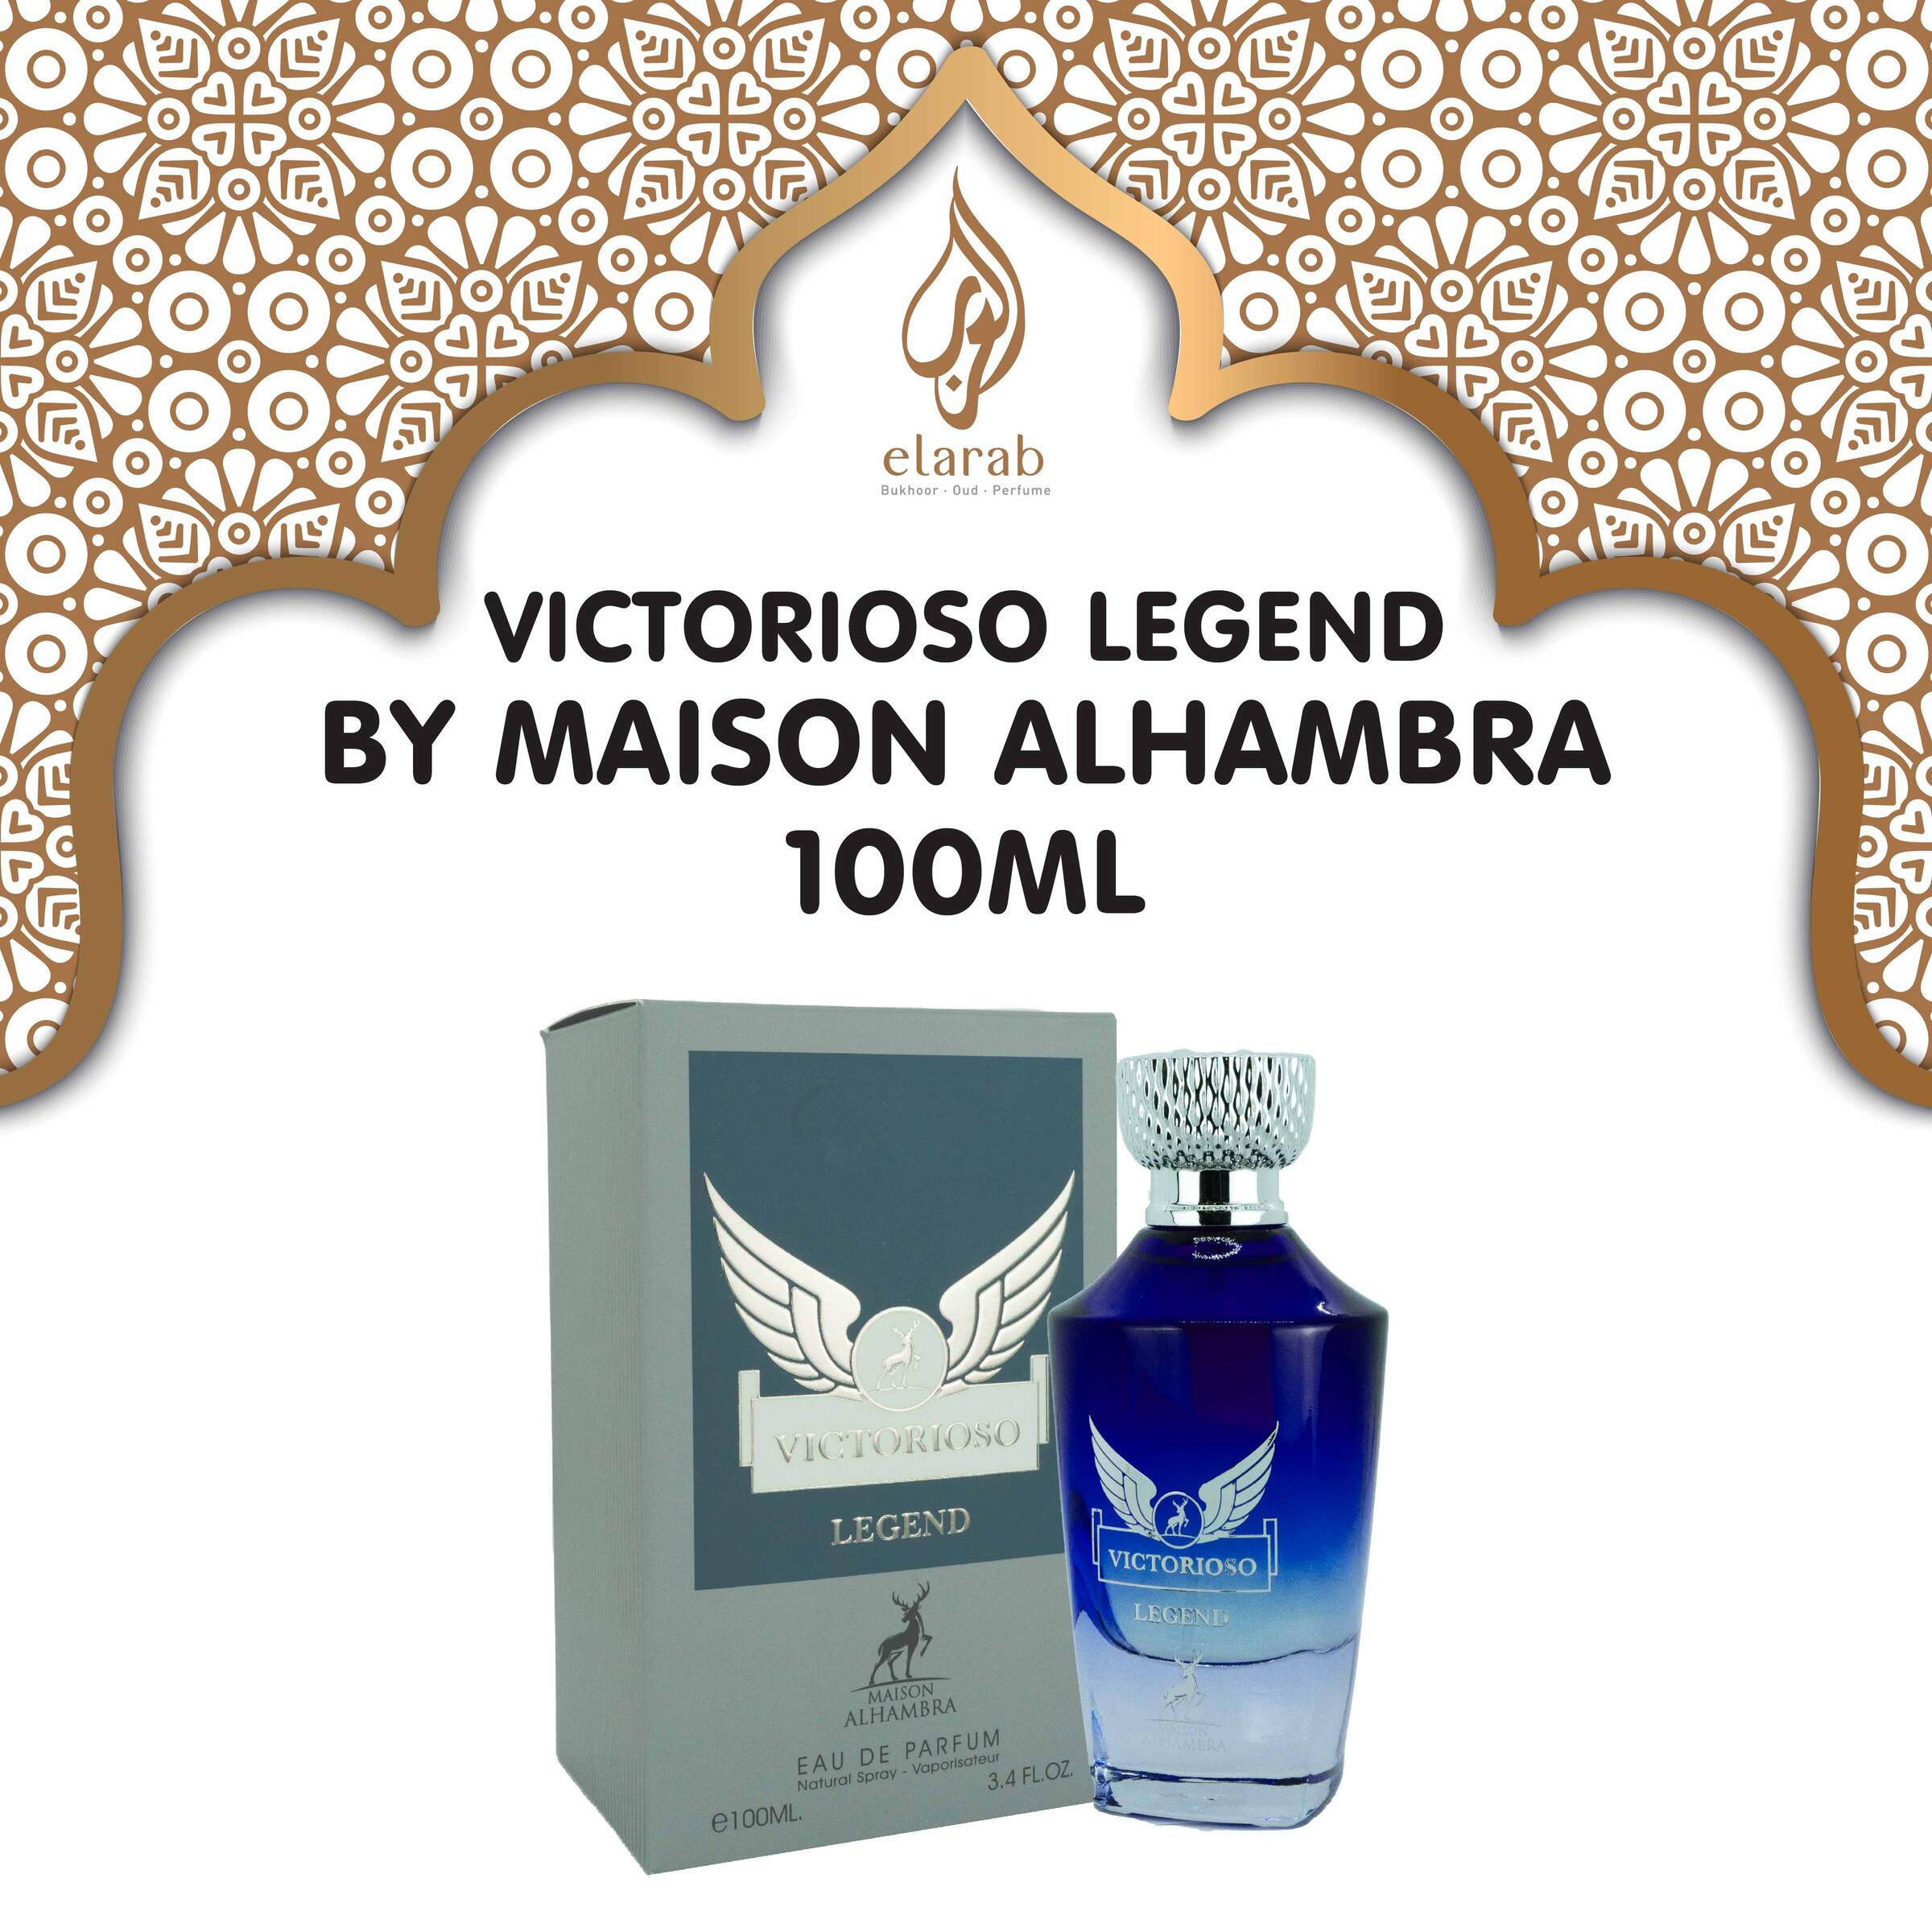 Maison Alhambra Victorioso Eau de Parfum 100ml